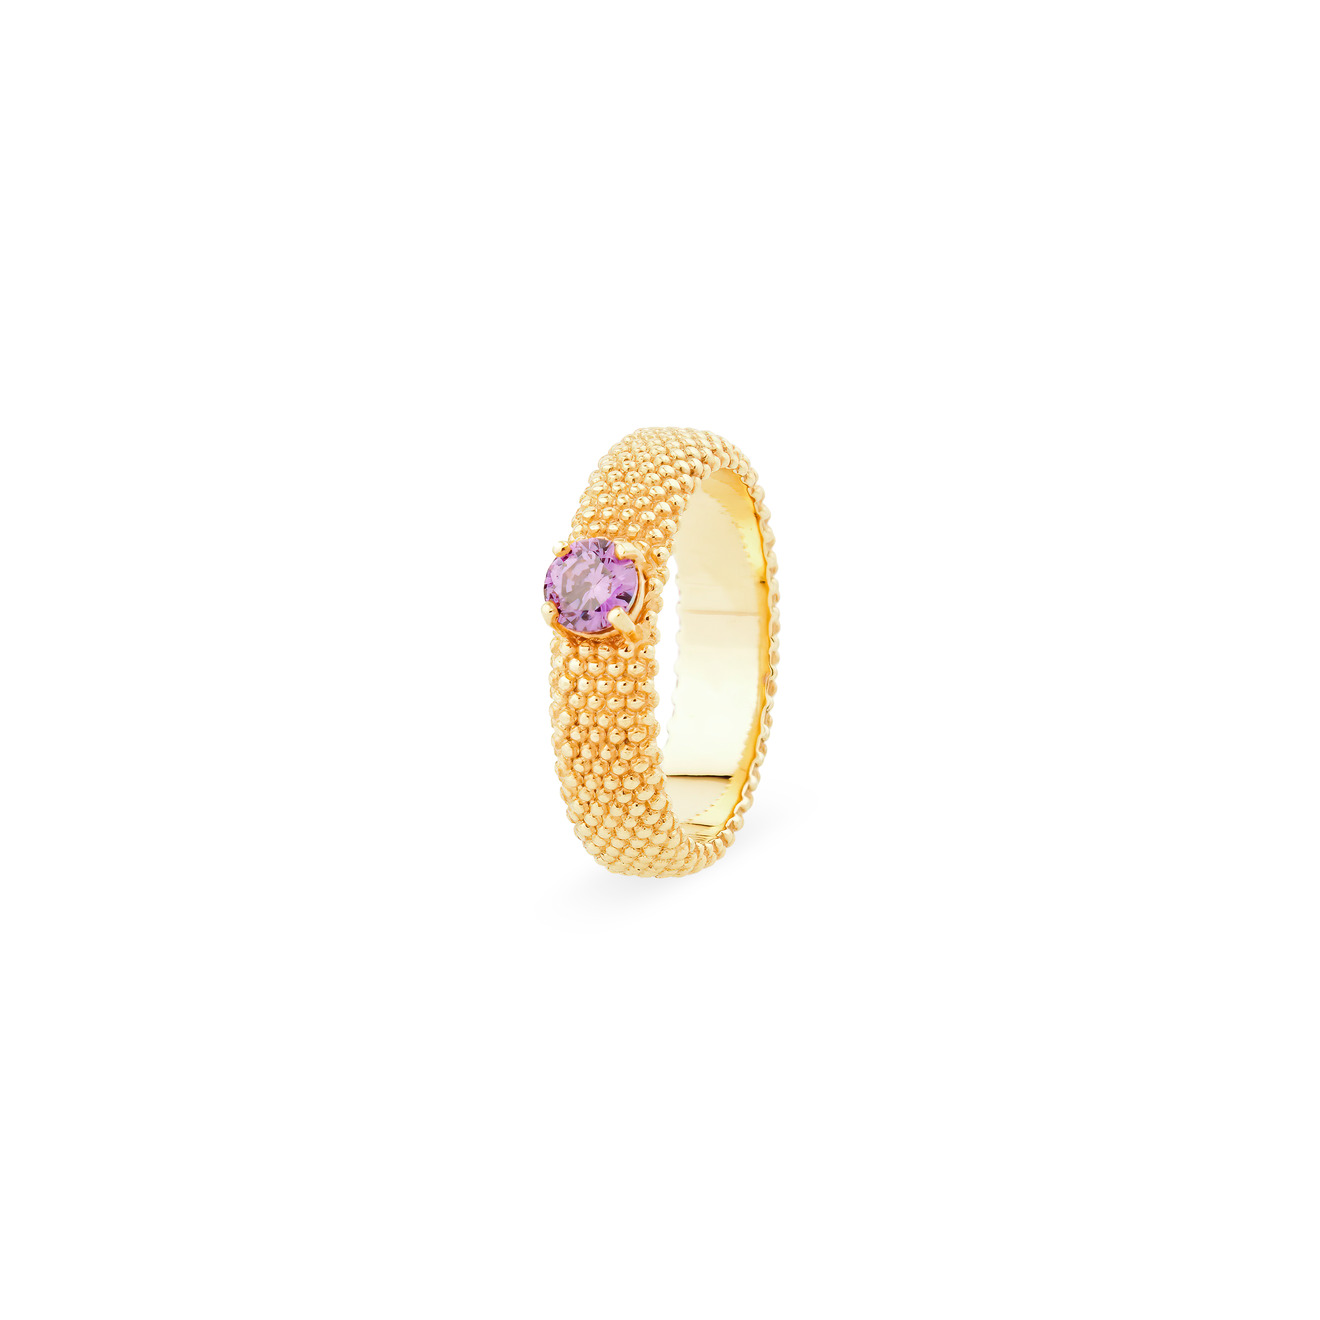 KRASHE jewellery Позолоченное кольцо «Золотые мурашки» с фиолетовым фианитом krashe jewellery кольцо вороны москвички с цитринами и хризолитами